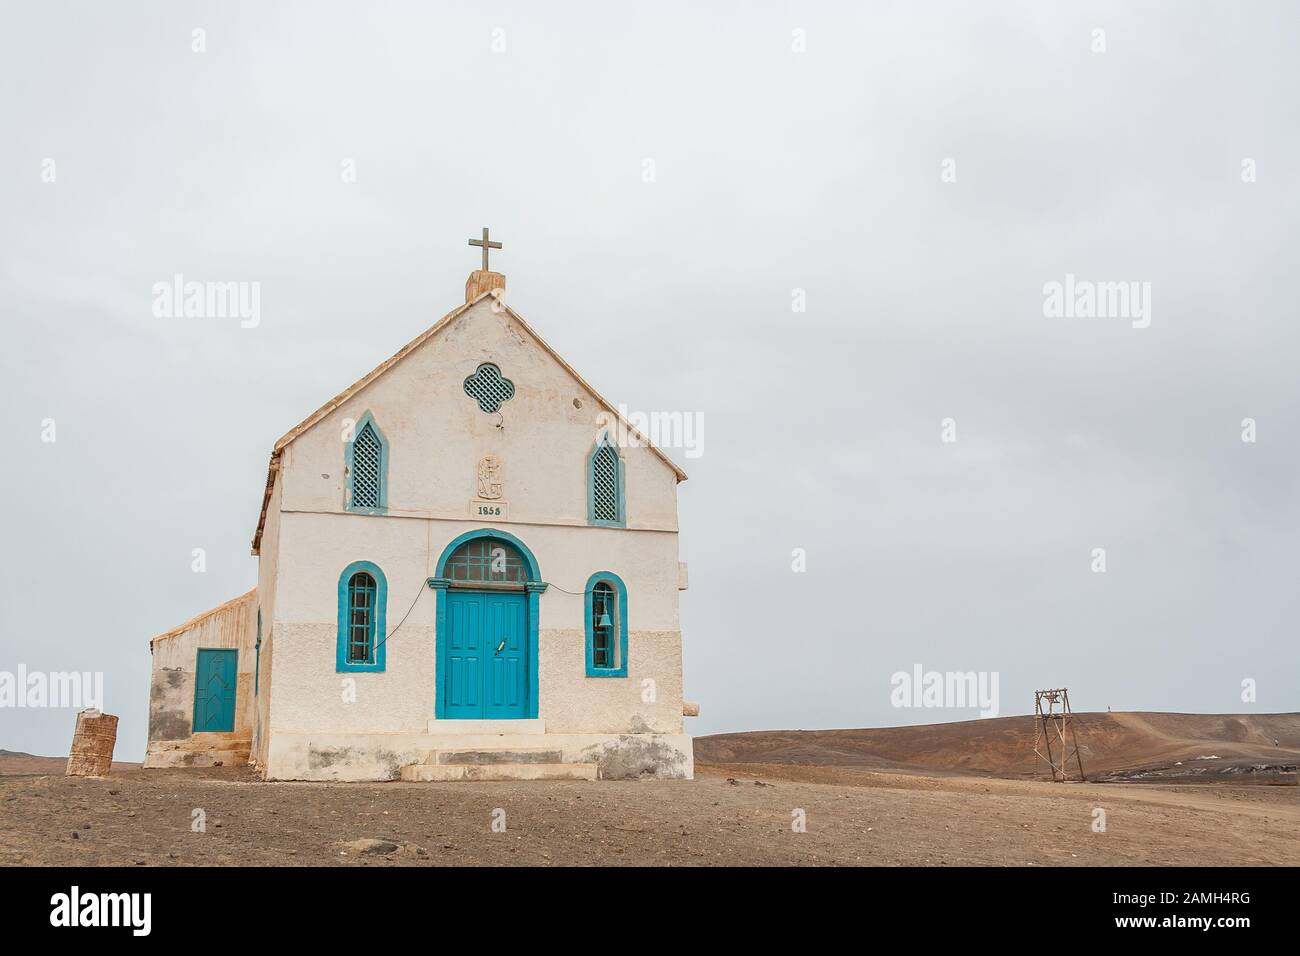 Chiesa della Madonna Della Compassione costruita nel 1853, la più antica chiesa di Sal Island, Pedra de Lume, Isole di Capo Verde, Africa. Foto Stock